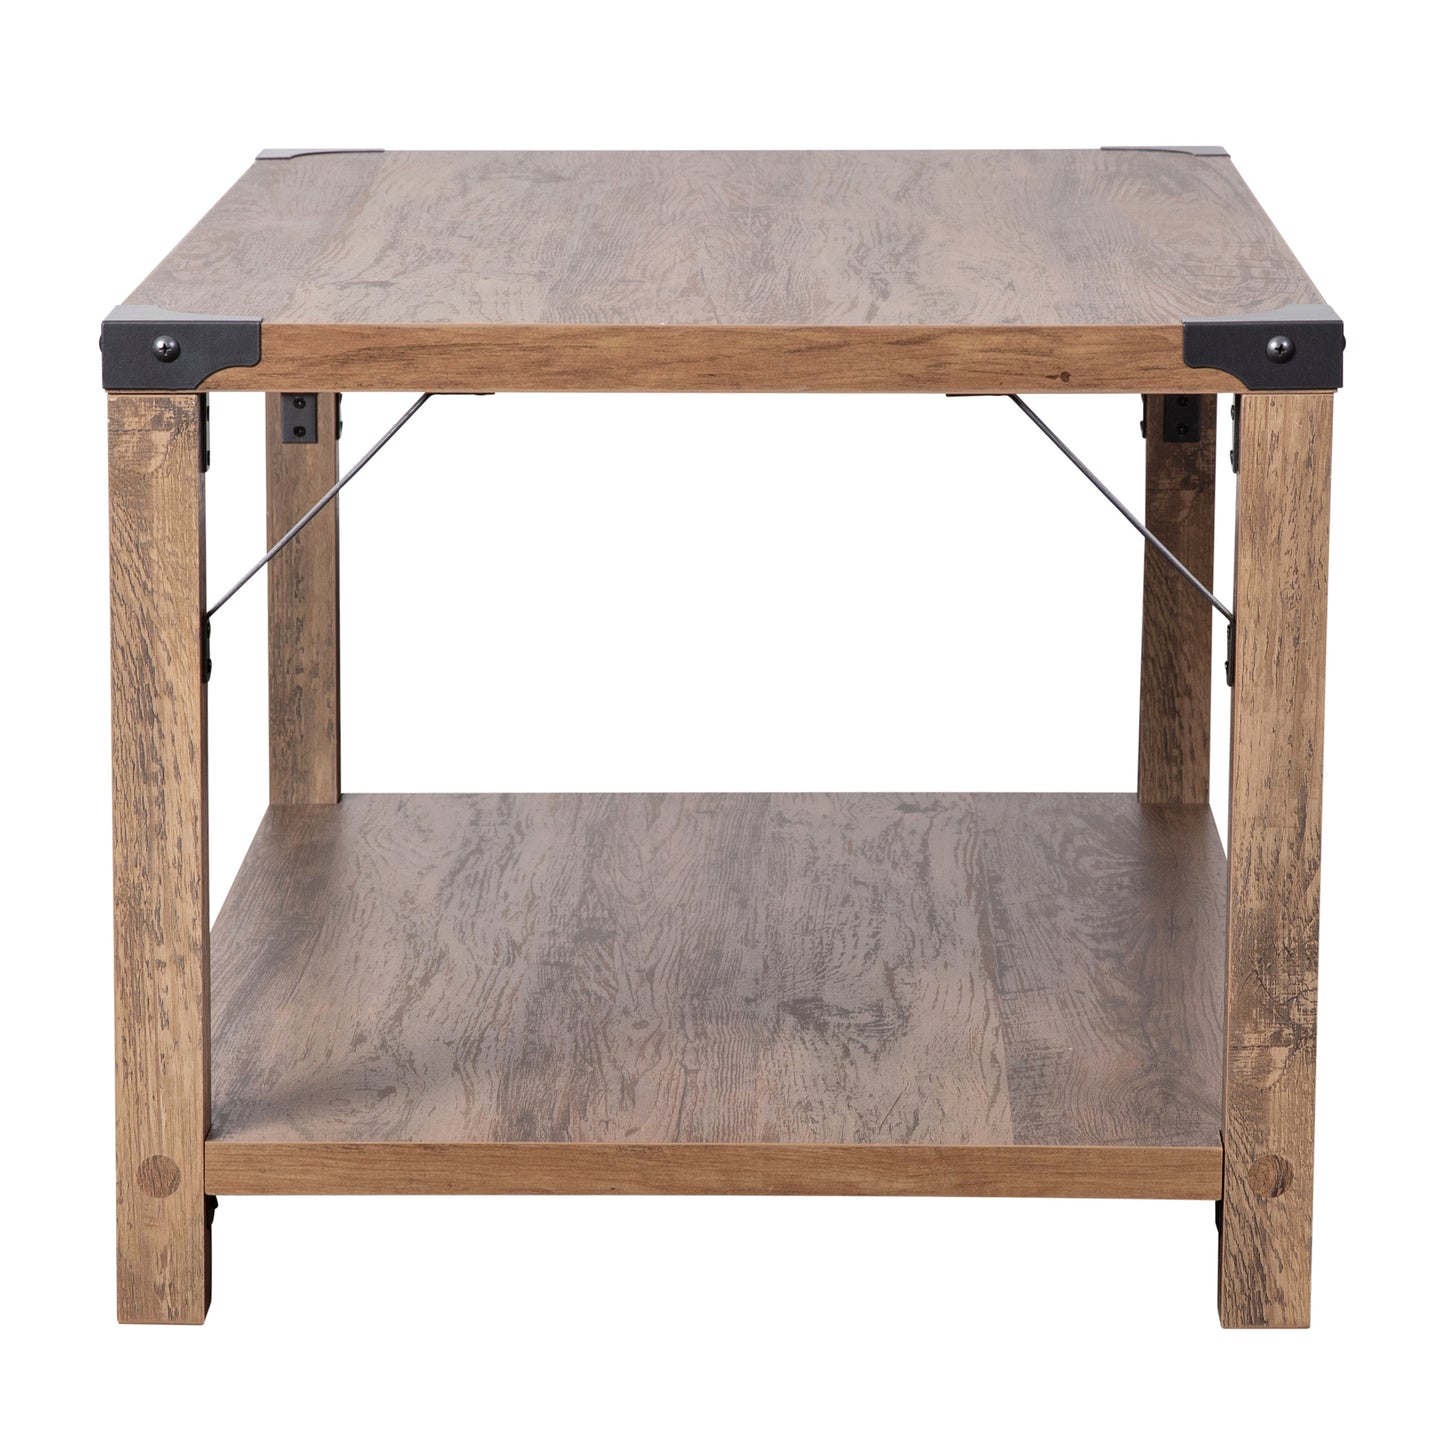 Rustic Oak 2 Tier Coffee Table ZG-037-OAK-GG